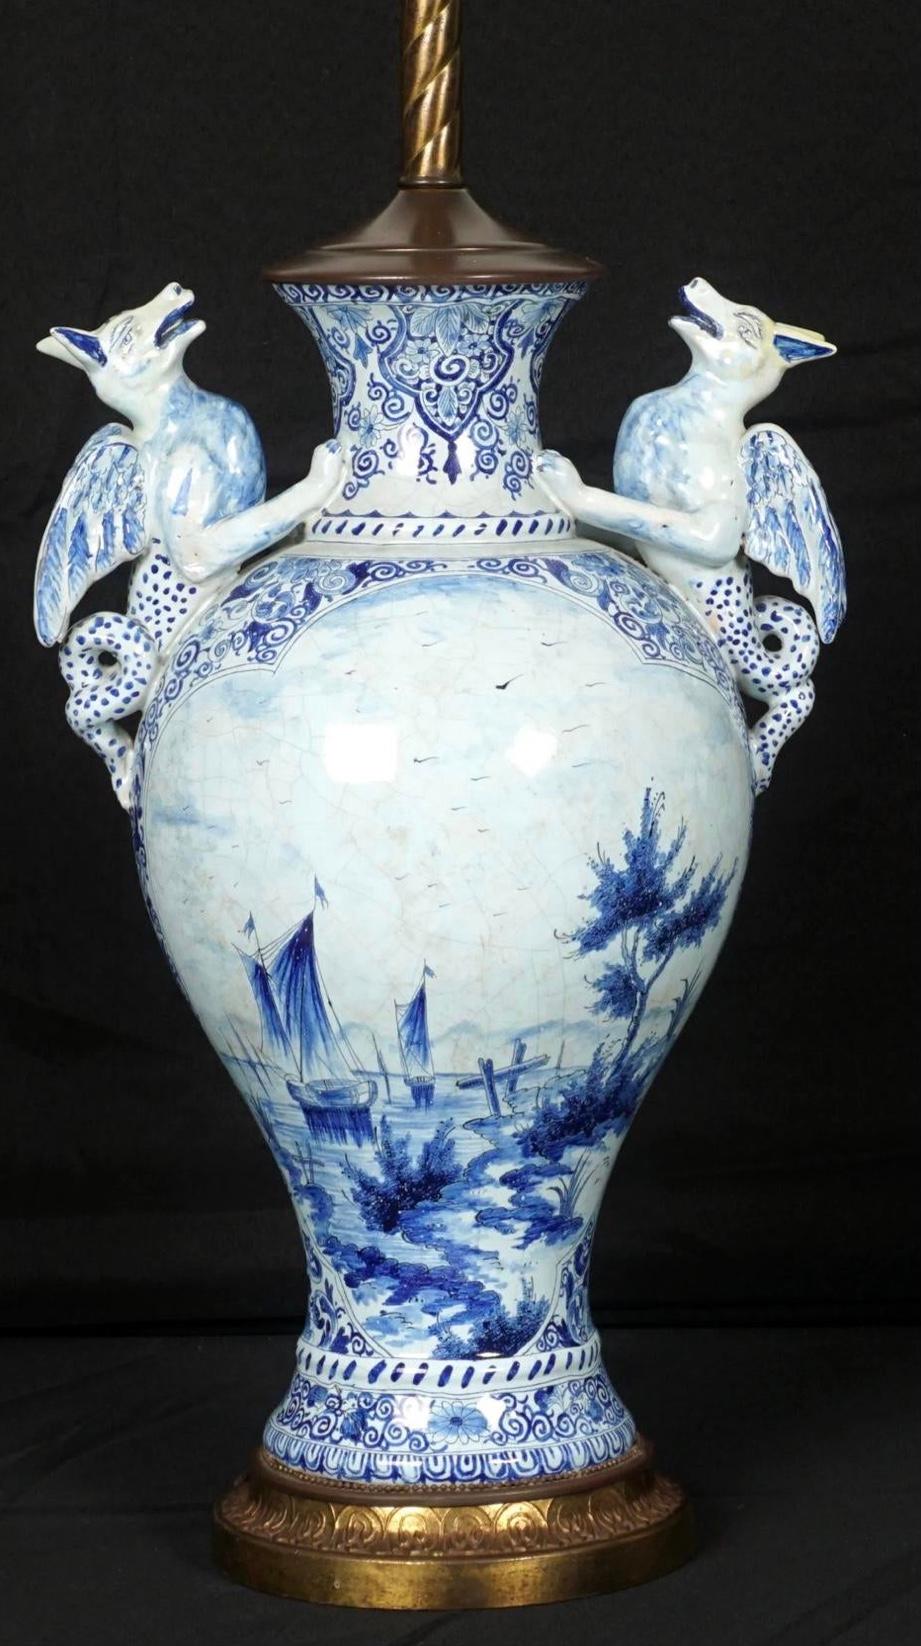 Lampe à poignée serpent figurée en faïence de Delft. vase de forme balustre en faïence bleu et blanc du 18e siècle, décoré d'anses en forme de serpent ailé, décoré de fleurs et de feuillages avec une scène de bord de mer d'un côté, un homme et une